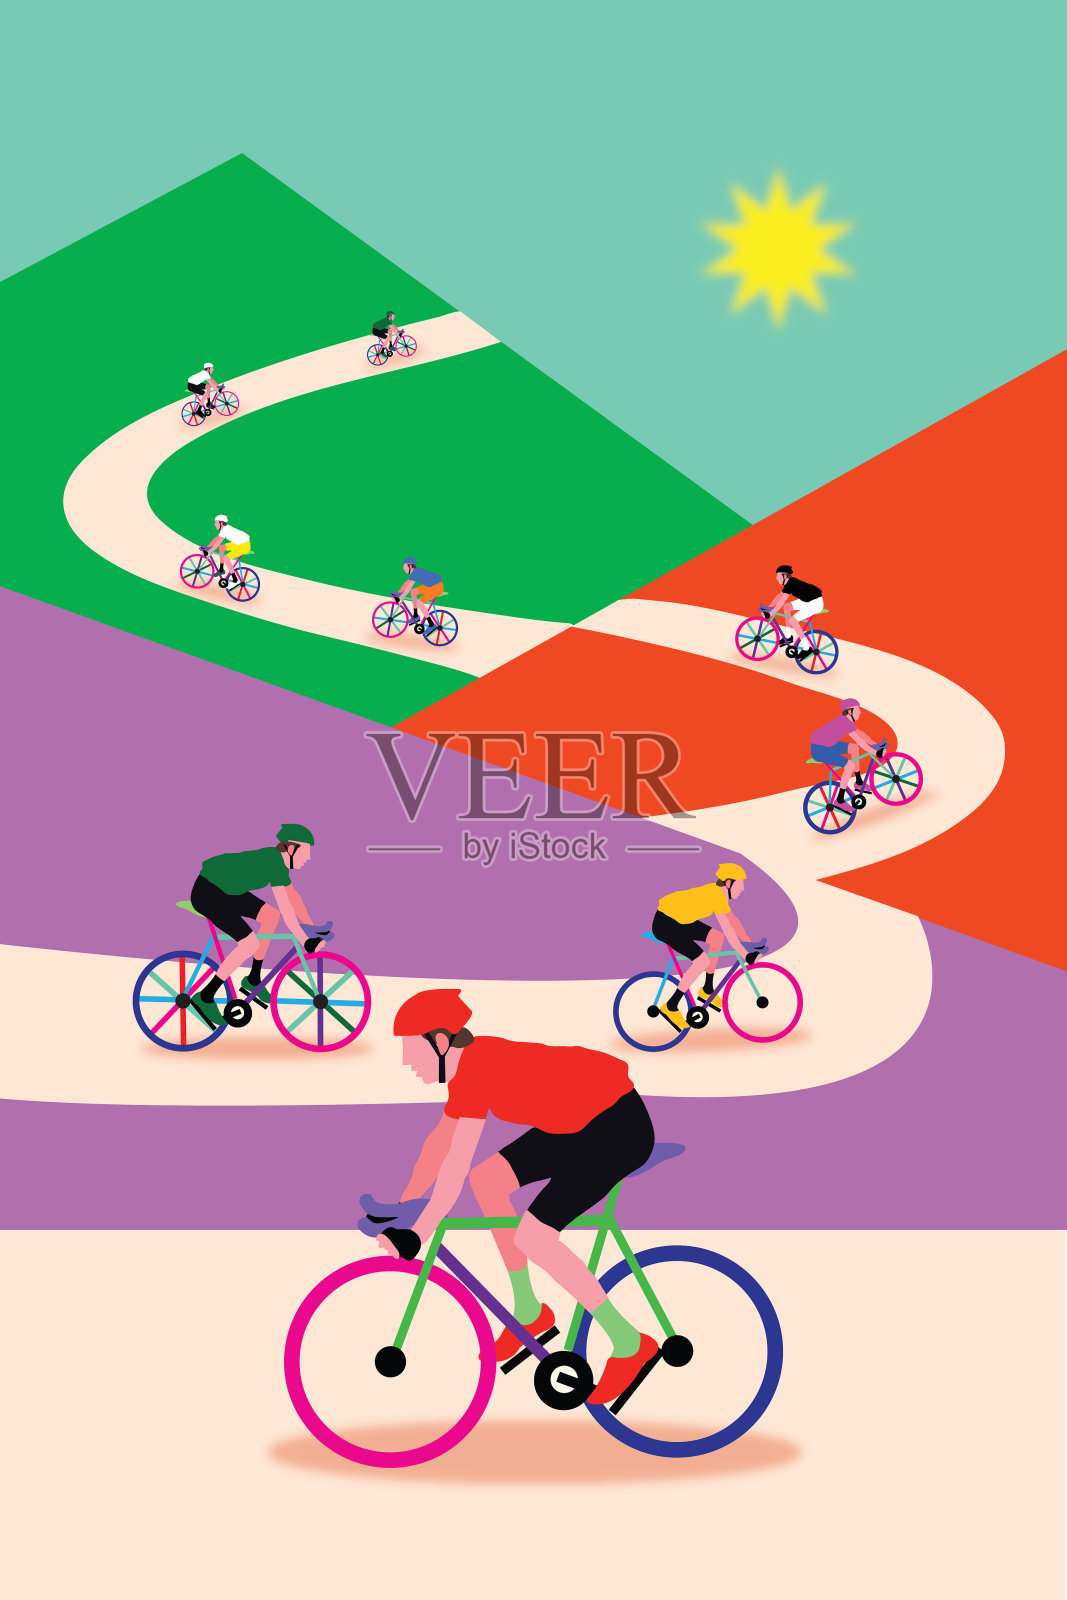 参加专业自行车拉力赛的一组车手插画图片素材